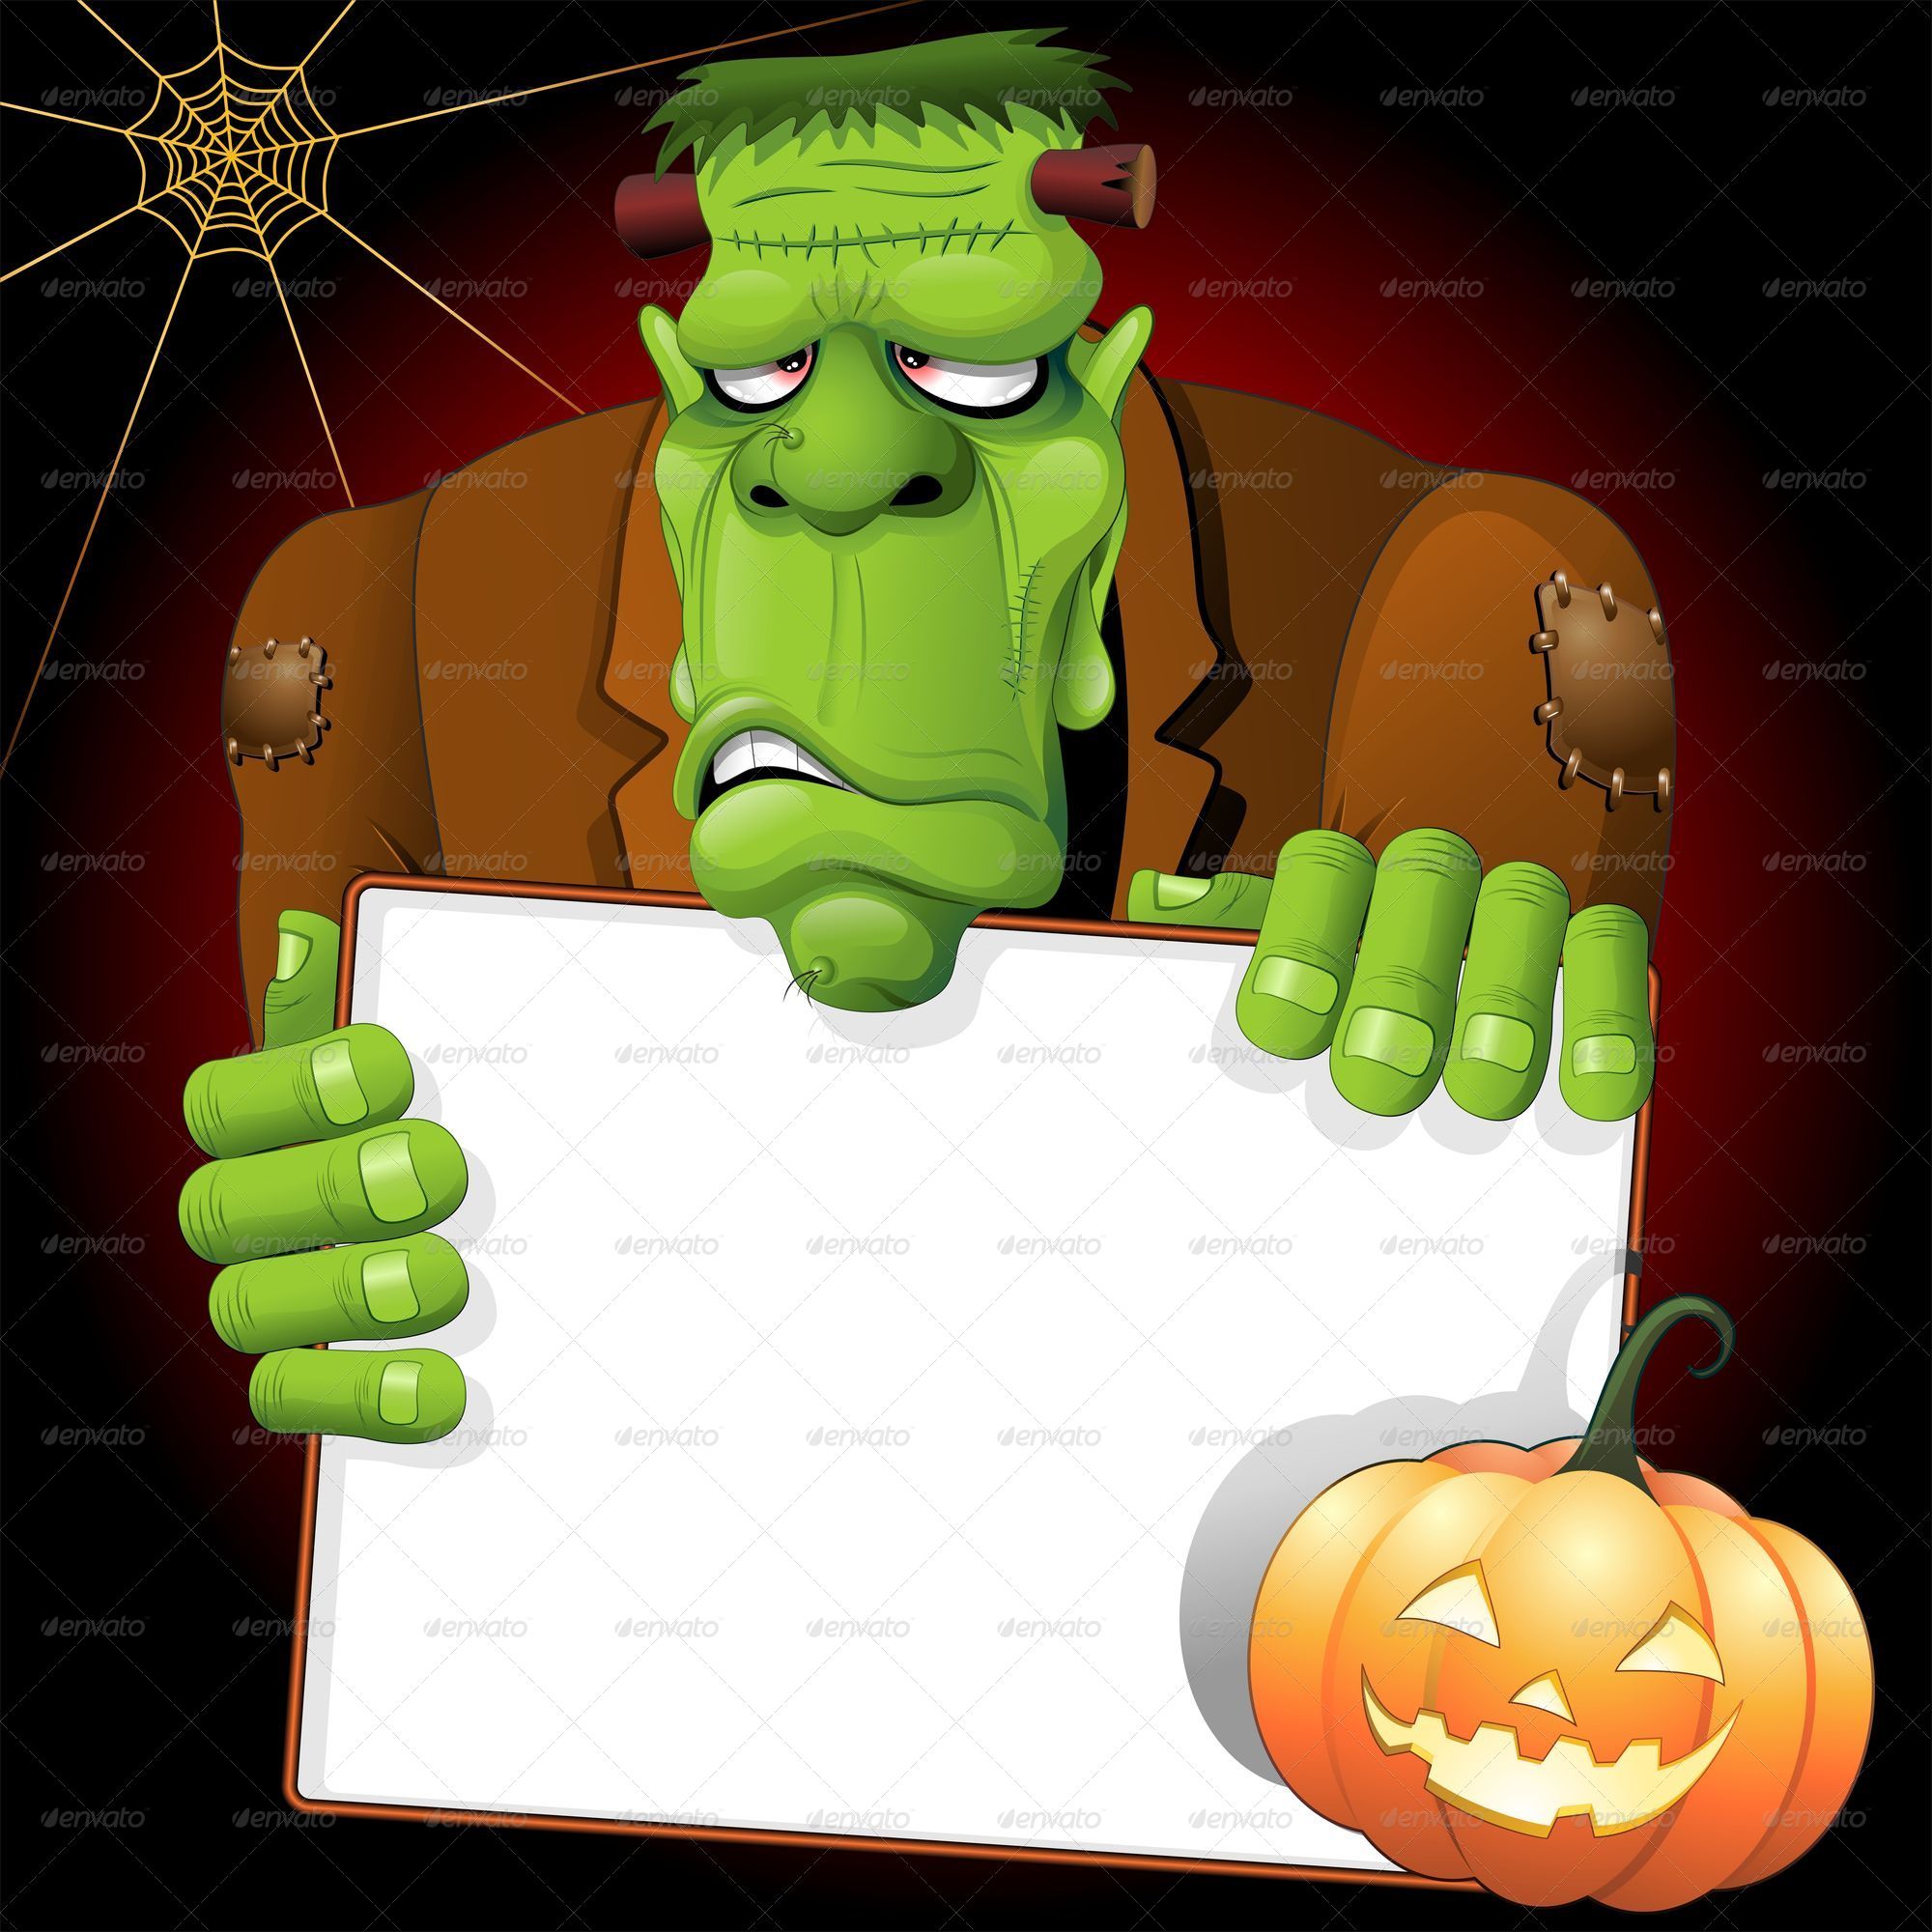 Frankenstein Cartoon with White Panel and Pumpkin by Bluedarkat